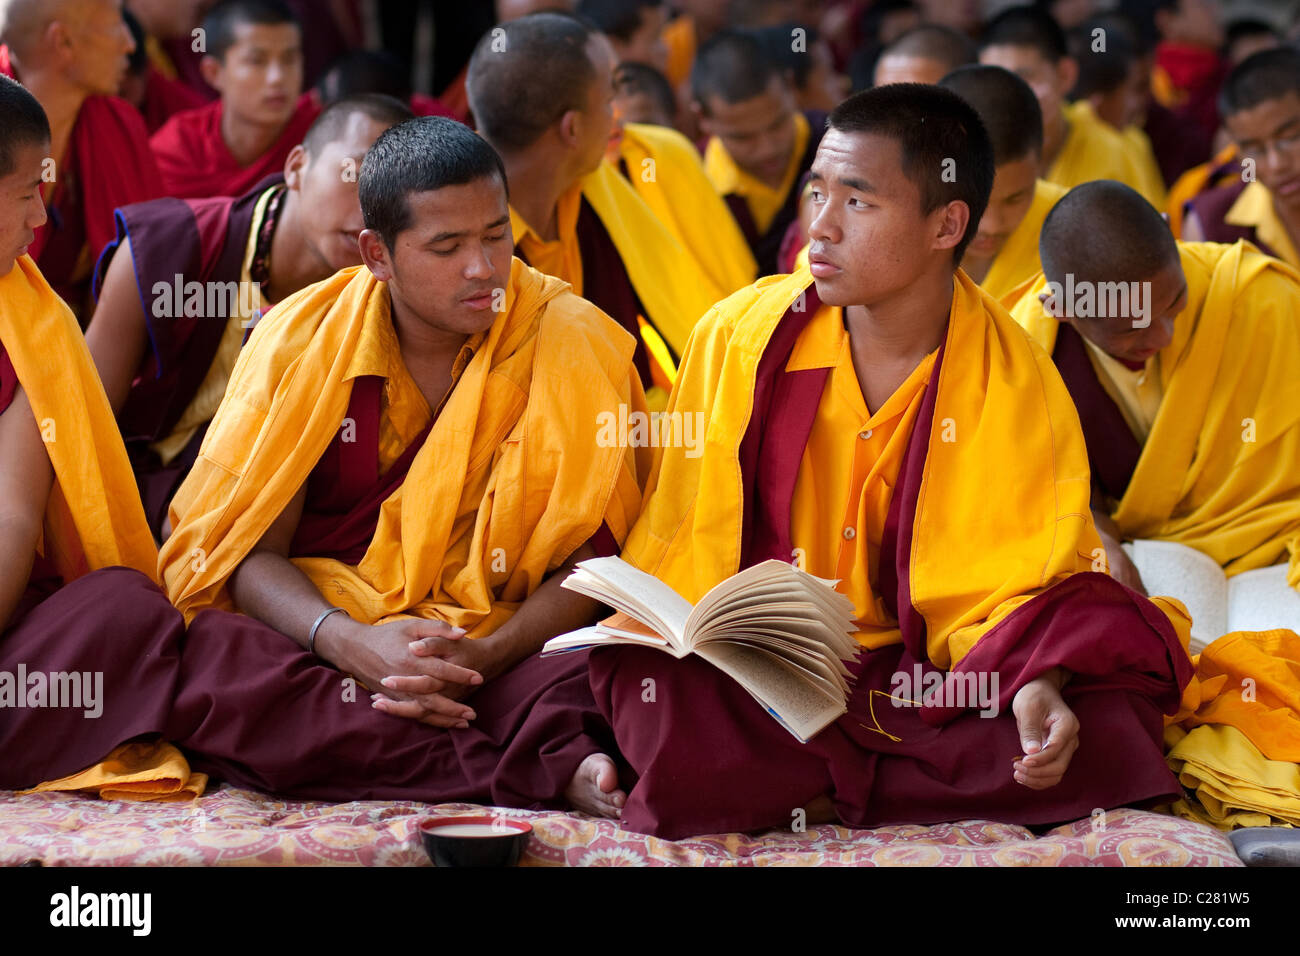 Junge Mönche in gelben Roben zu meditieren, um die Aufklärung über eine Mönlam buddhistische Festival im Mahabodhi-Tempel zu erreichen Stockfoto